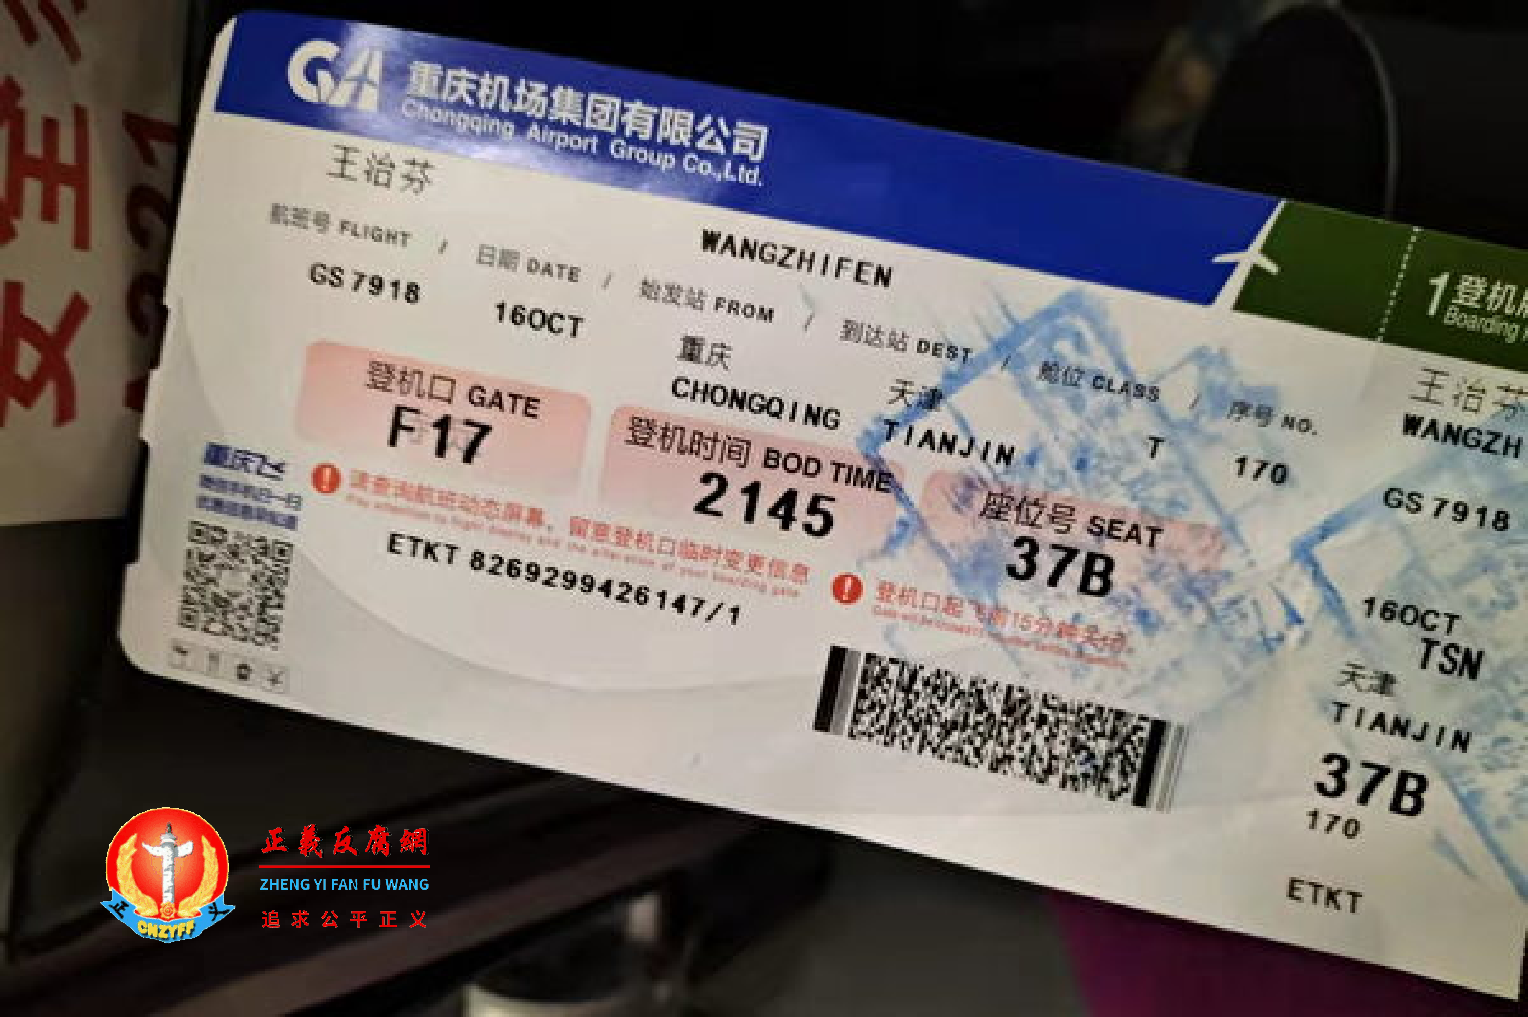 10月16日，重庆访民王治芬从重庆江北机场搭乘班机到天津。班机刚抵达天津就被警方带走。目前已失联。.png